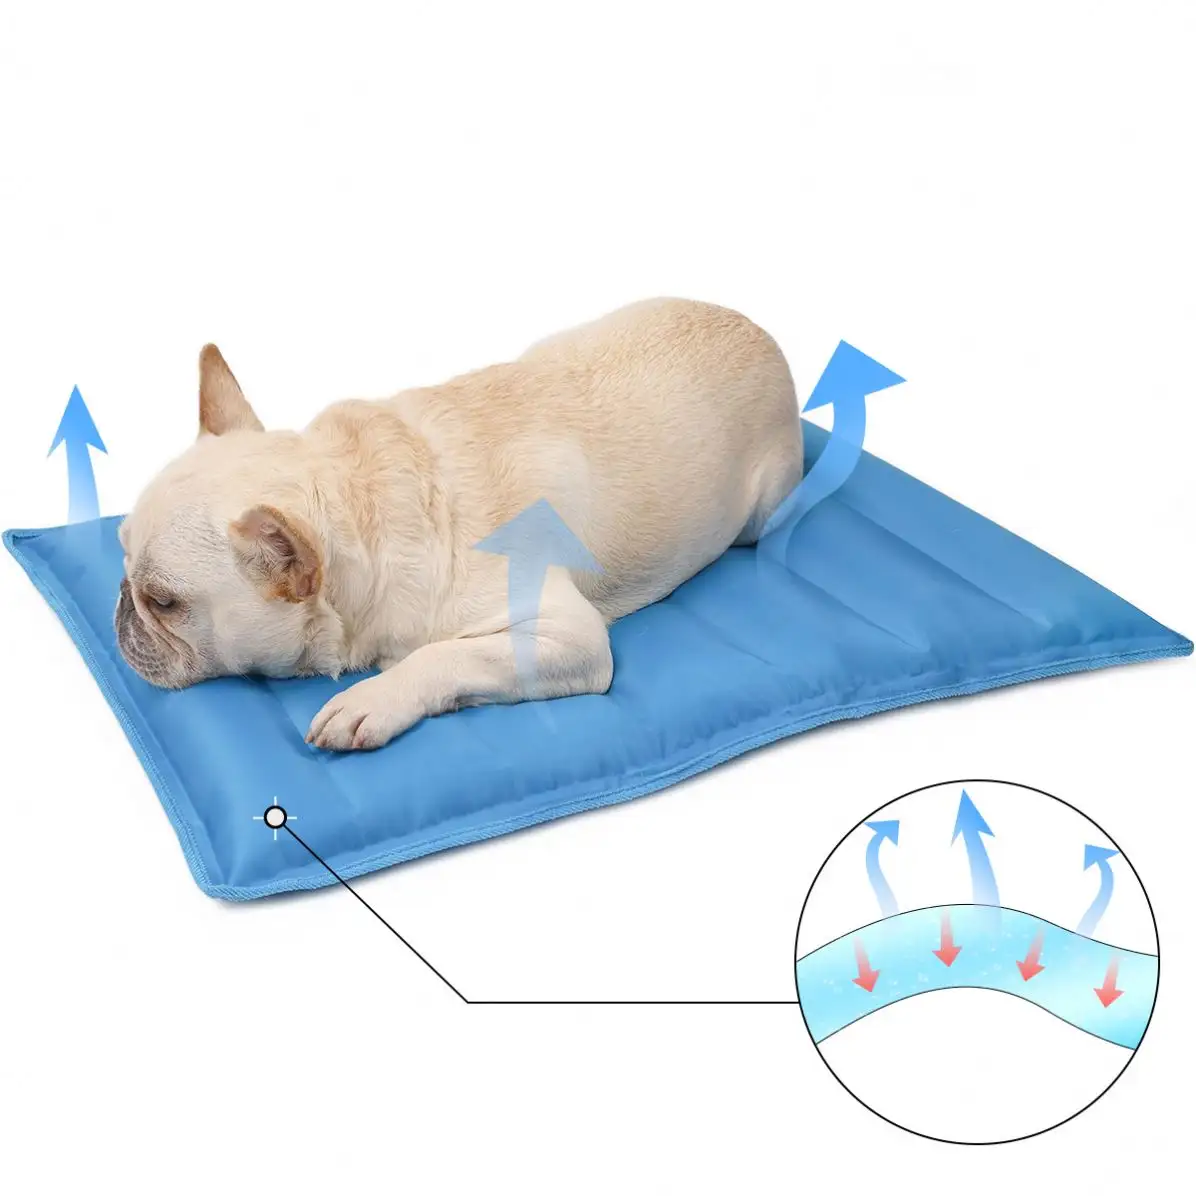 Pet Dog Cooling Mat Musim Panas Isi Air Gel Dog Sleeping Pad Pet Ice Water Cool Pad